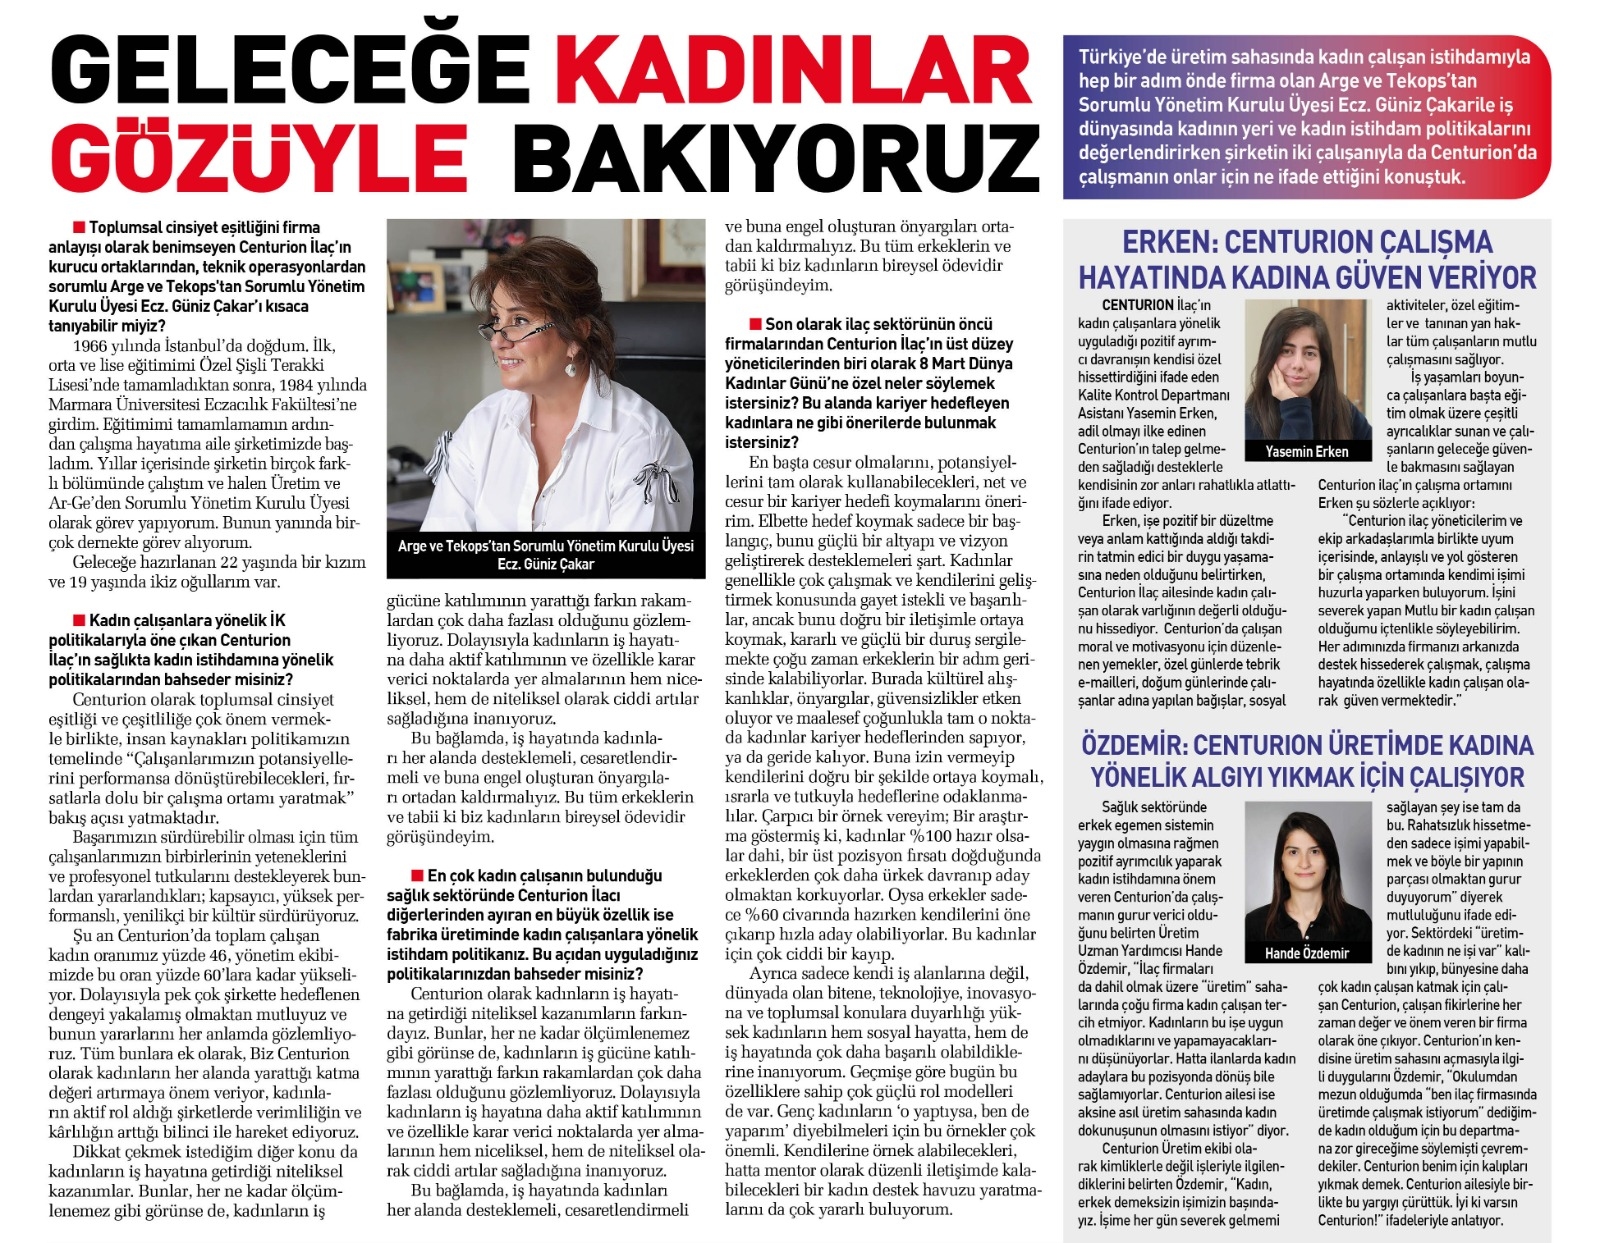 8 Mart Dünya Kadınlar gününde TEKOPS ve ArGe den sorumlu Yönetim Kurulu Üyemiz Ecz. Güniz Çakar’ın Sabah Gazetesi ve Workshop Dergisinde ki röportajı